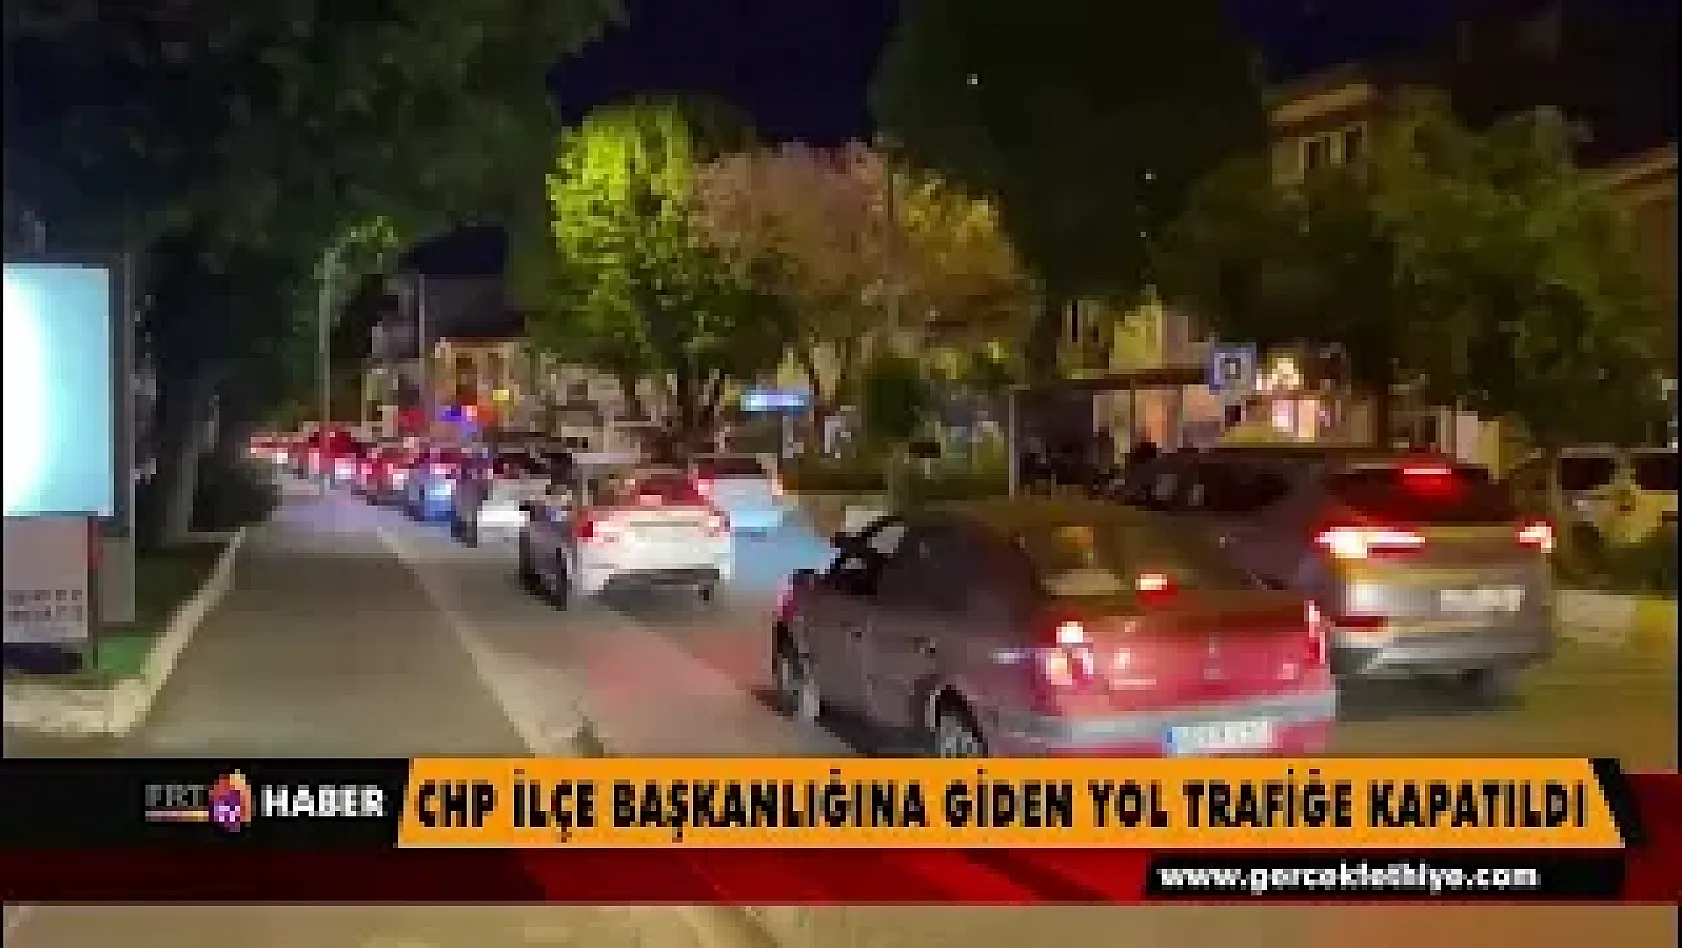 CHP İlçe Başkanlığına giden yol trafiğe kapatıldı